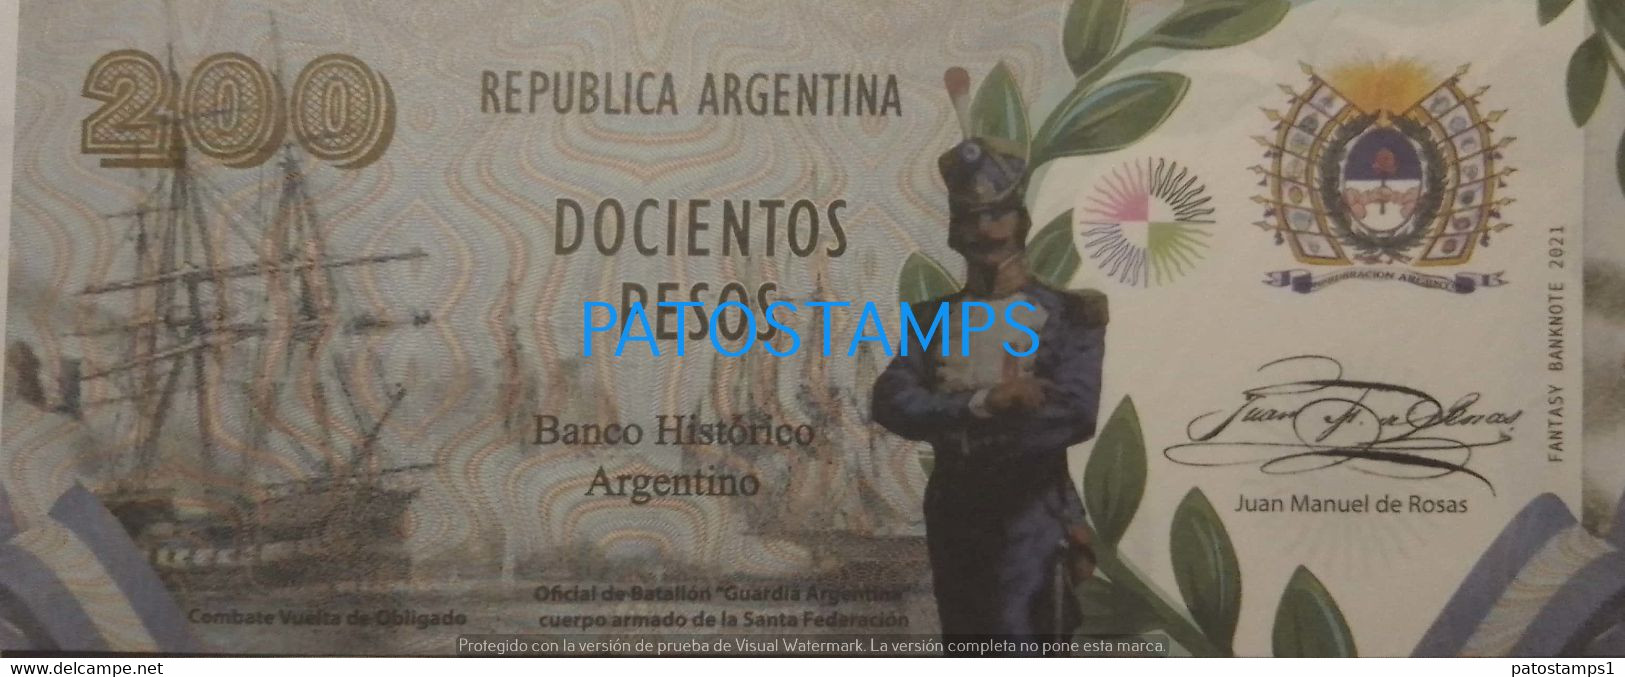 192520 BILLETE FANTASY TICKET 200 BANK ARGENTINA PROCER JUAN M. DE ROSAS RESTAURADOR DE LAS LEYES NO POSTCARD - Vrac - Billets